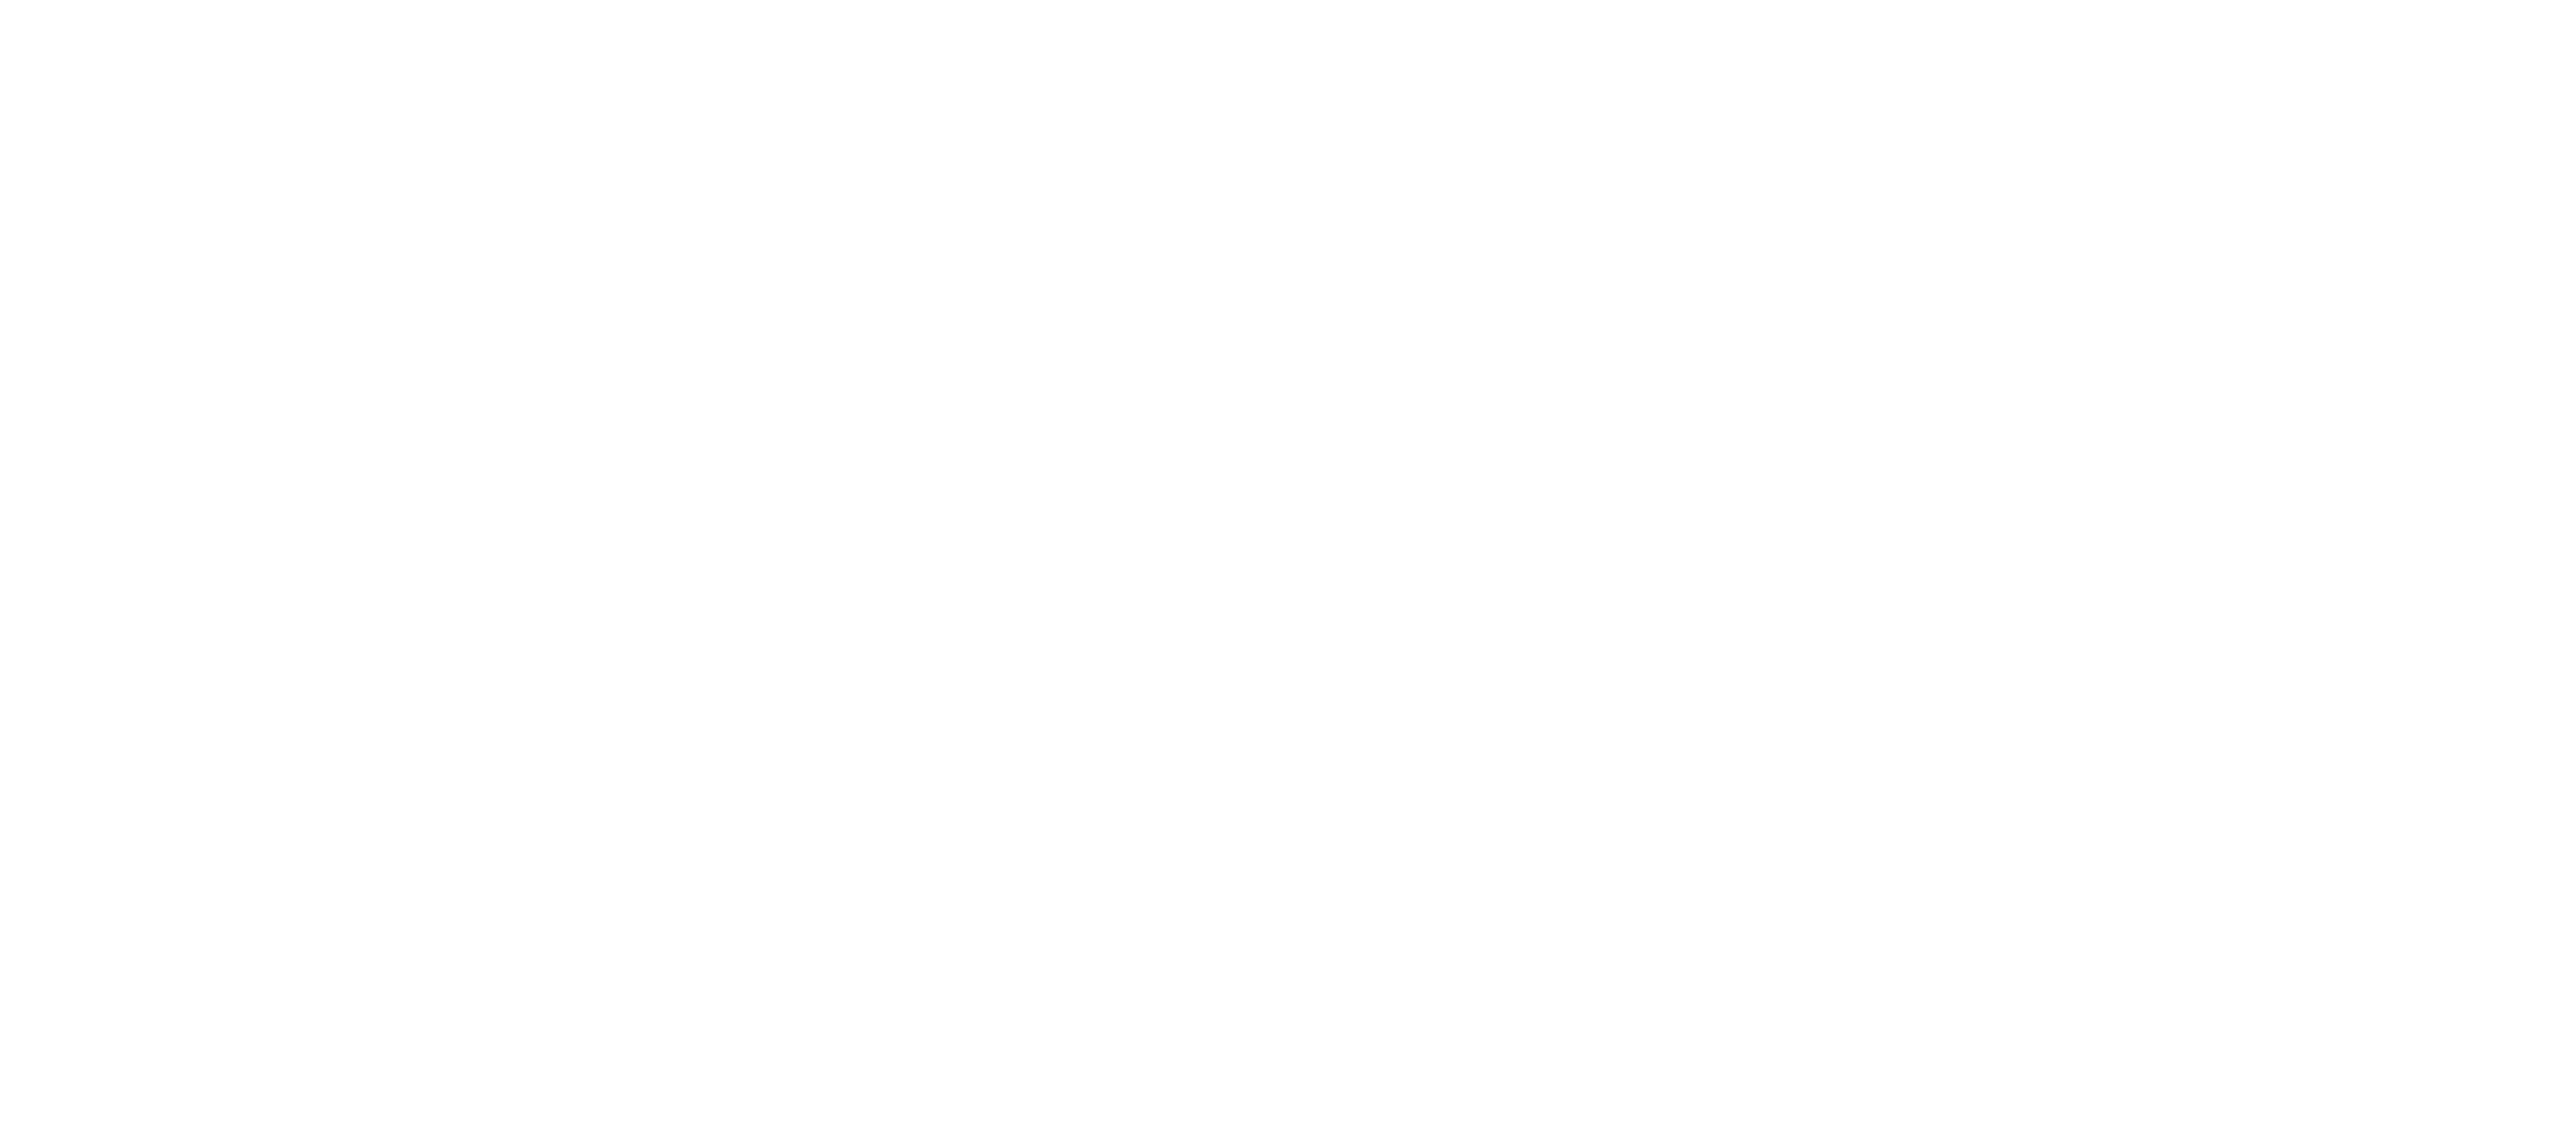 Rollins Reverse